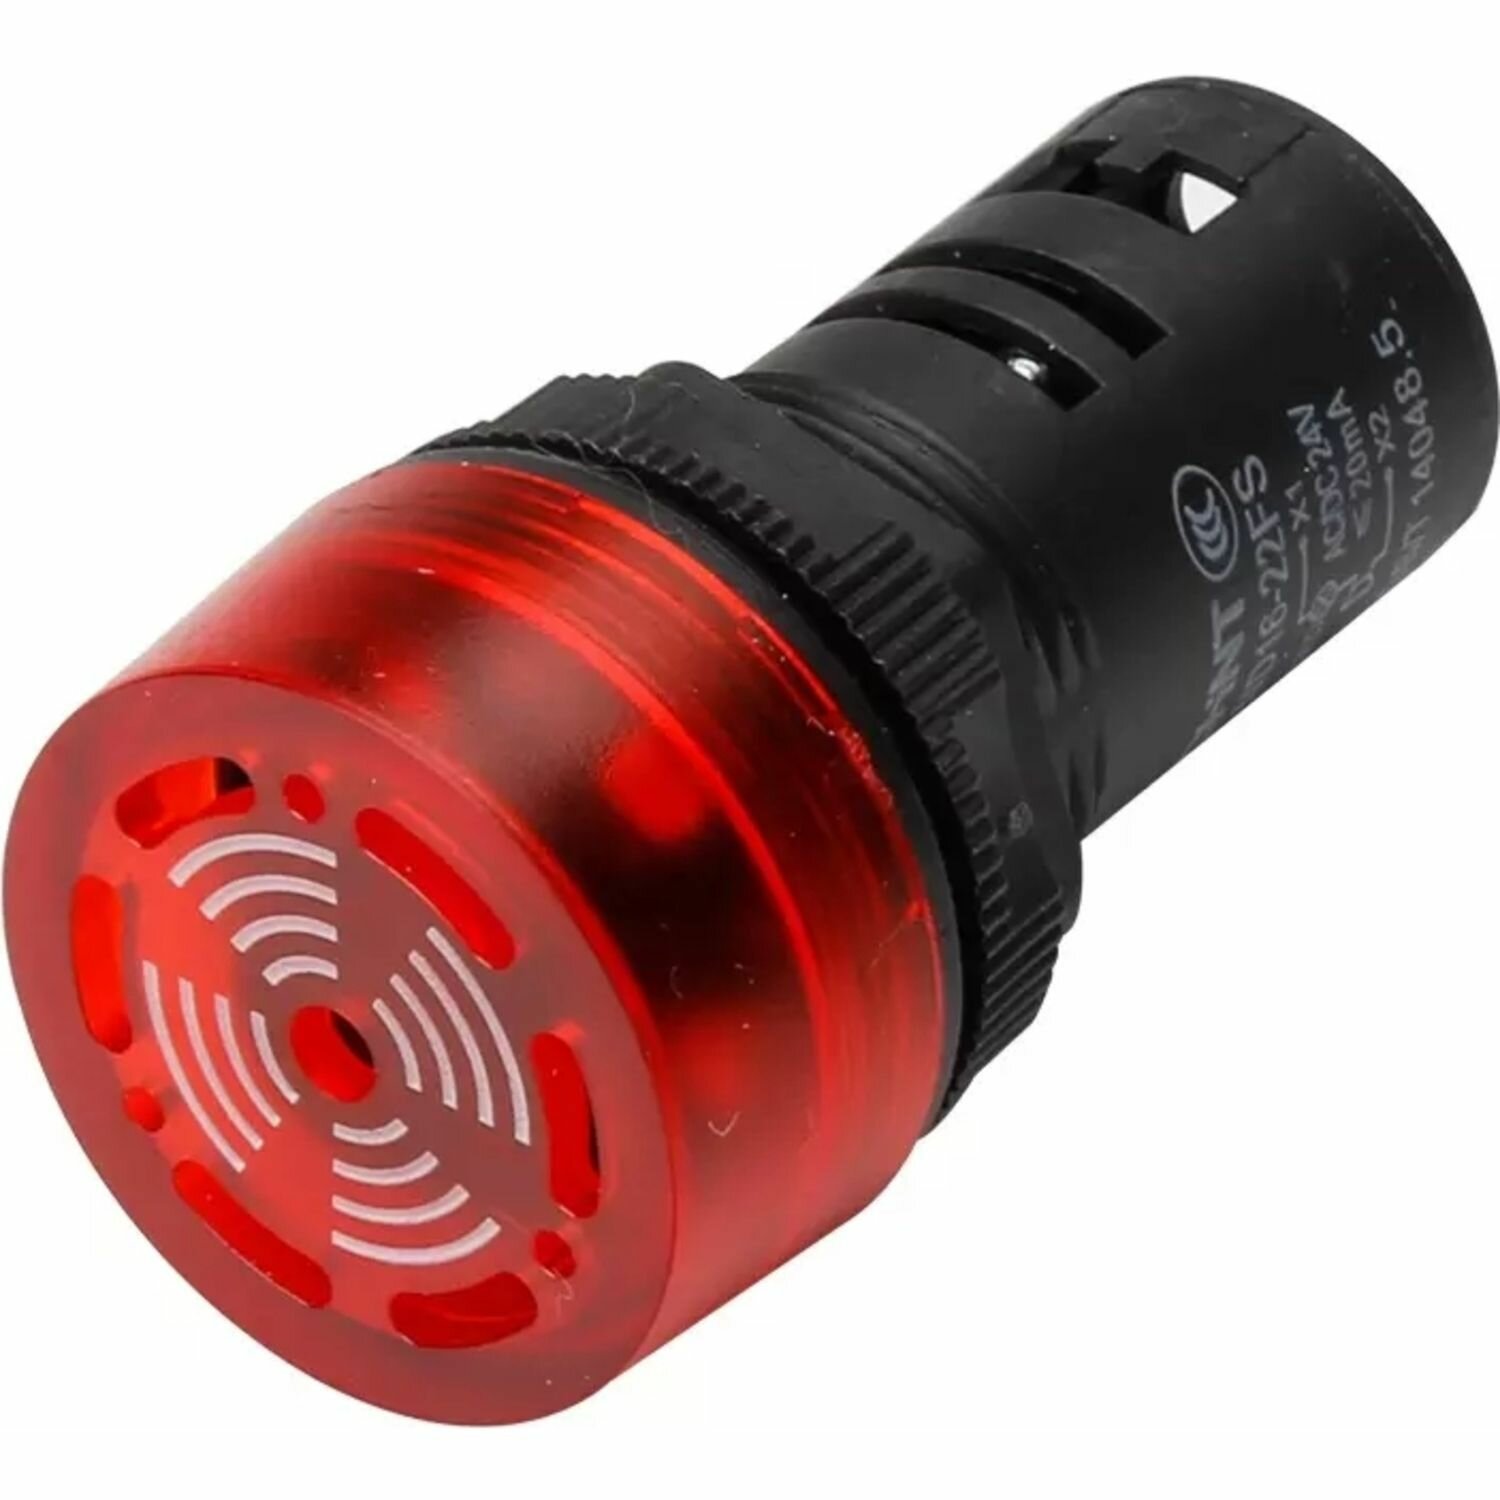 Сигнализатор звуковой ND16-22FS Φ22 мм красный LED AC/DC24В (R)